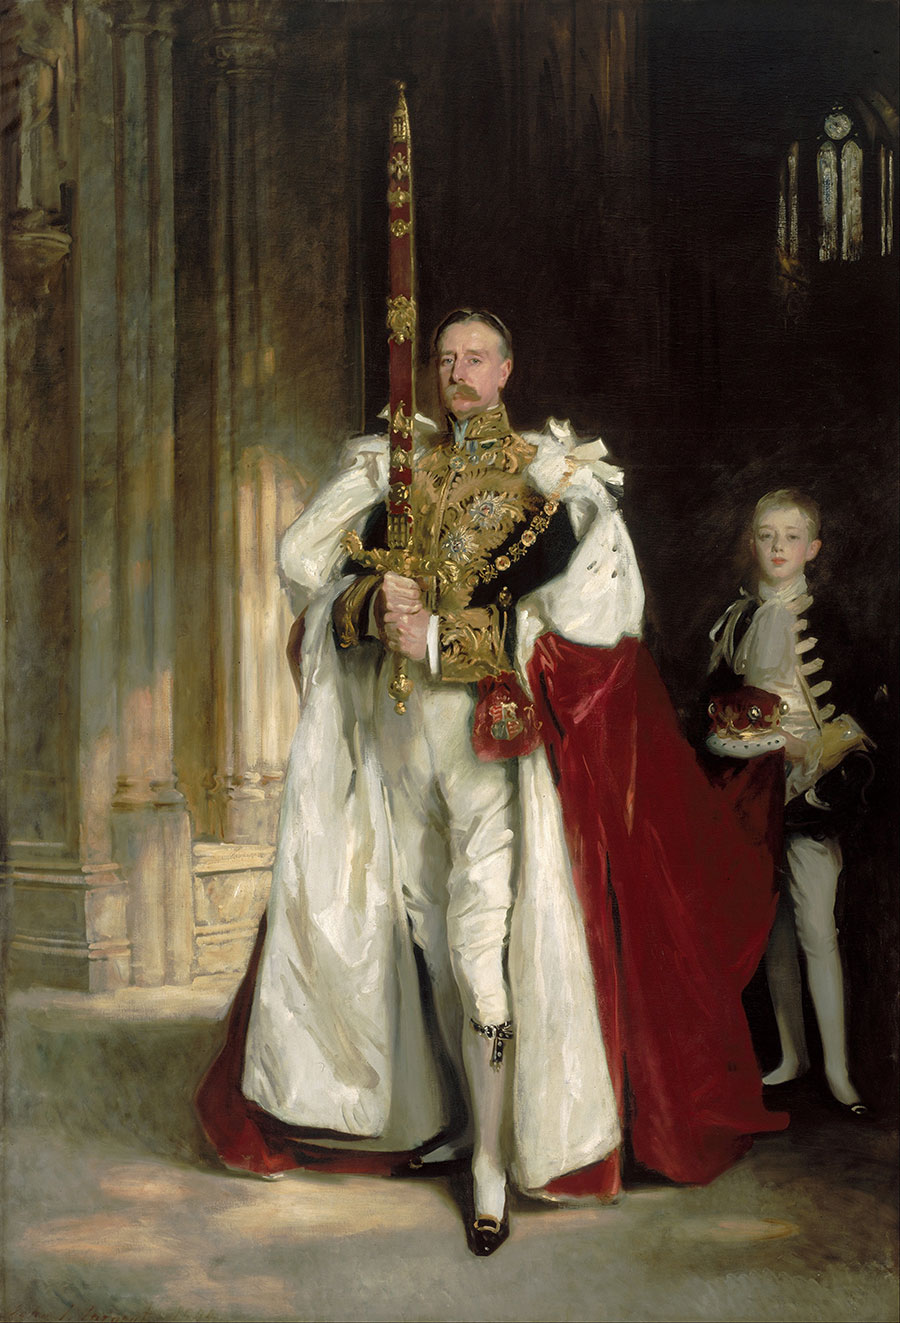 萨金特油画作品: 国王举剑油画欣赏 查尔斯．斯图瓦特侯爵